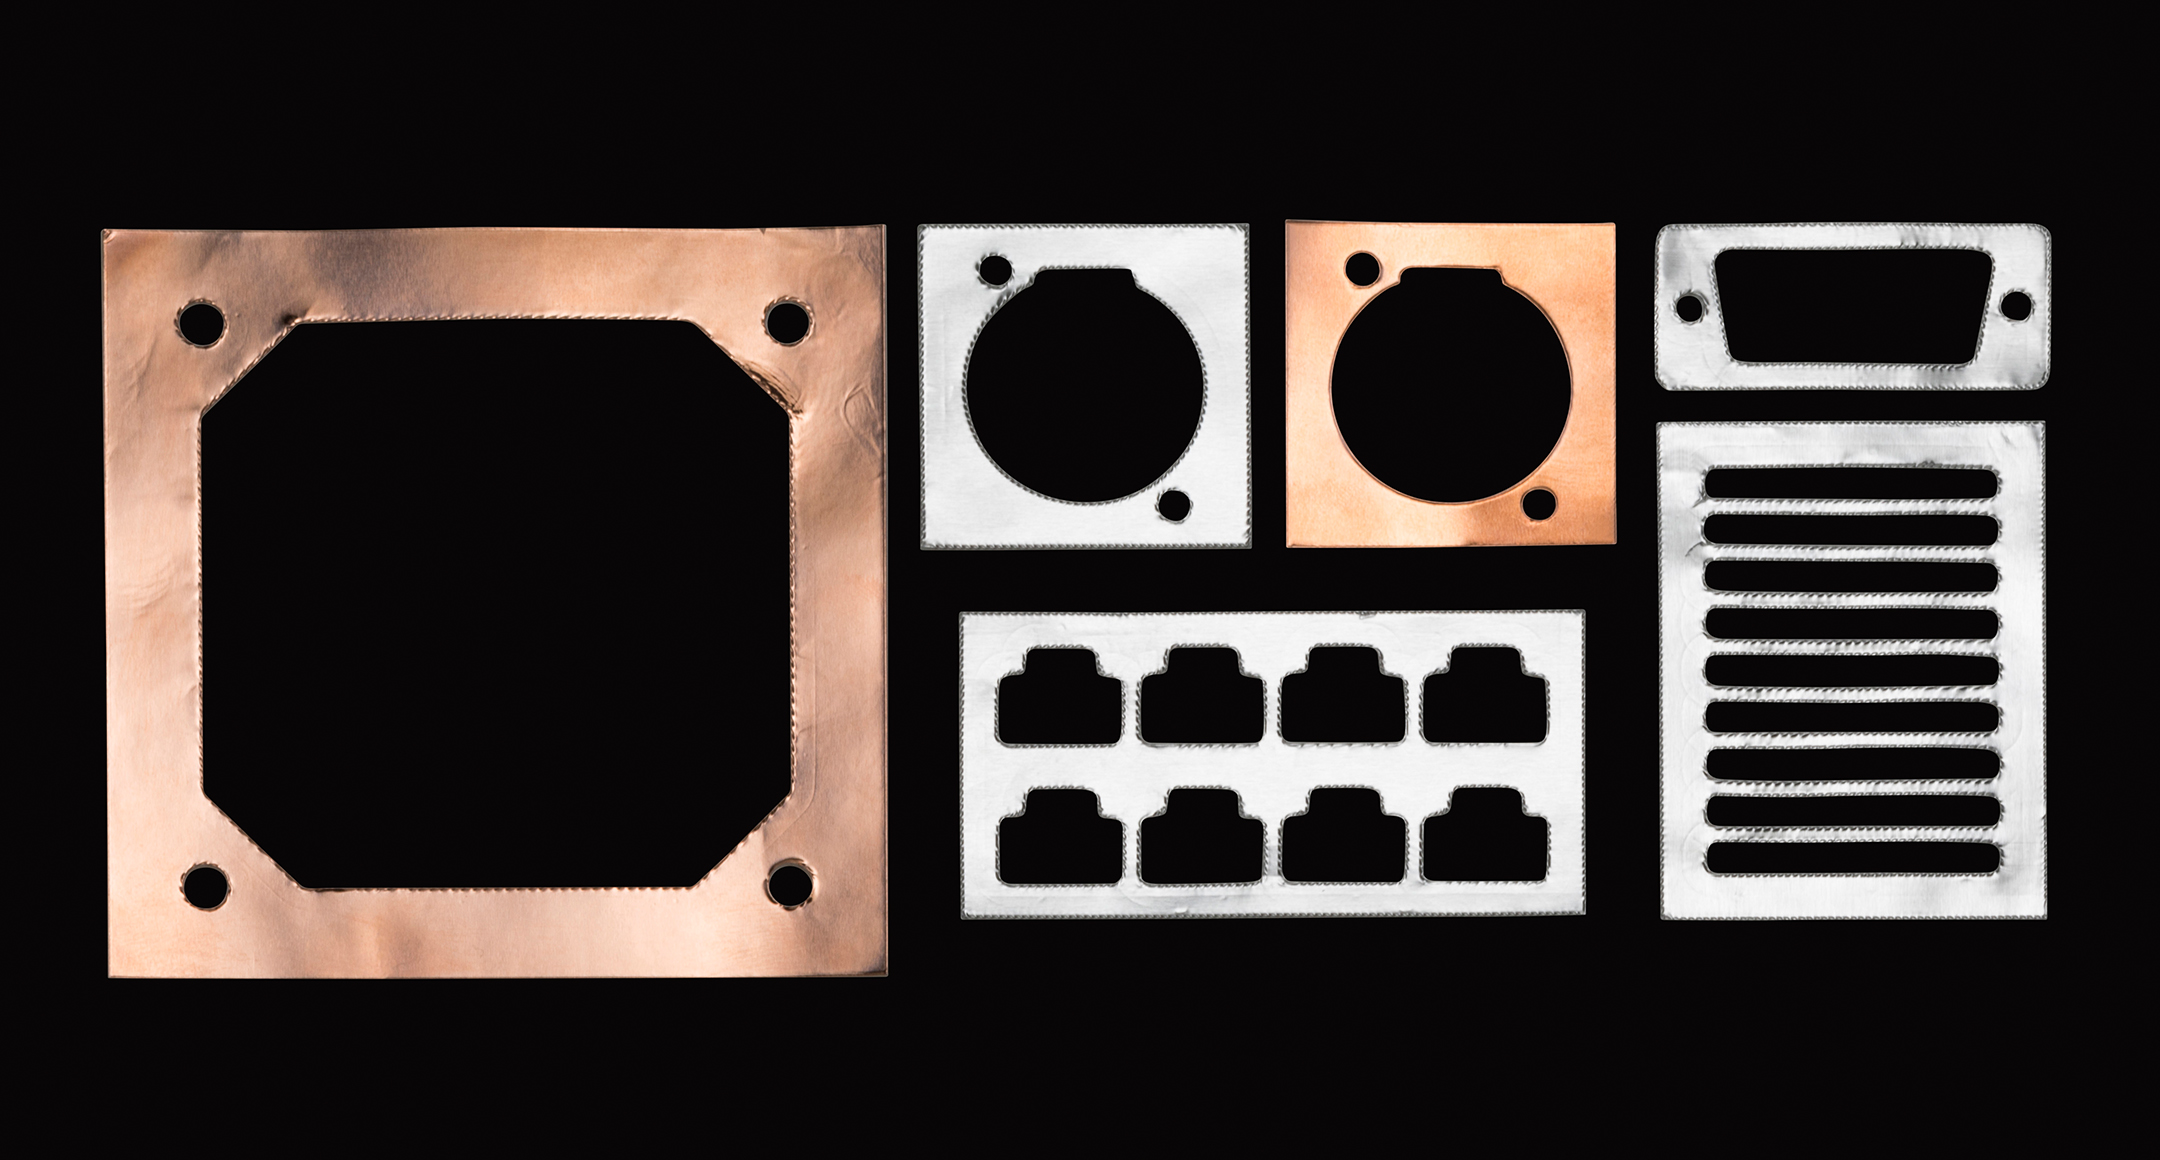 低価格型 導電性銅箔シート CUTSシリーズの画像